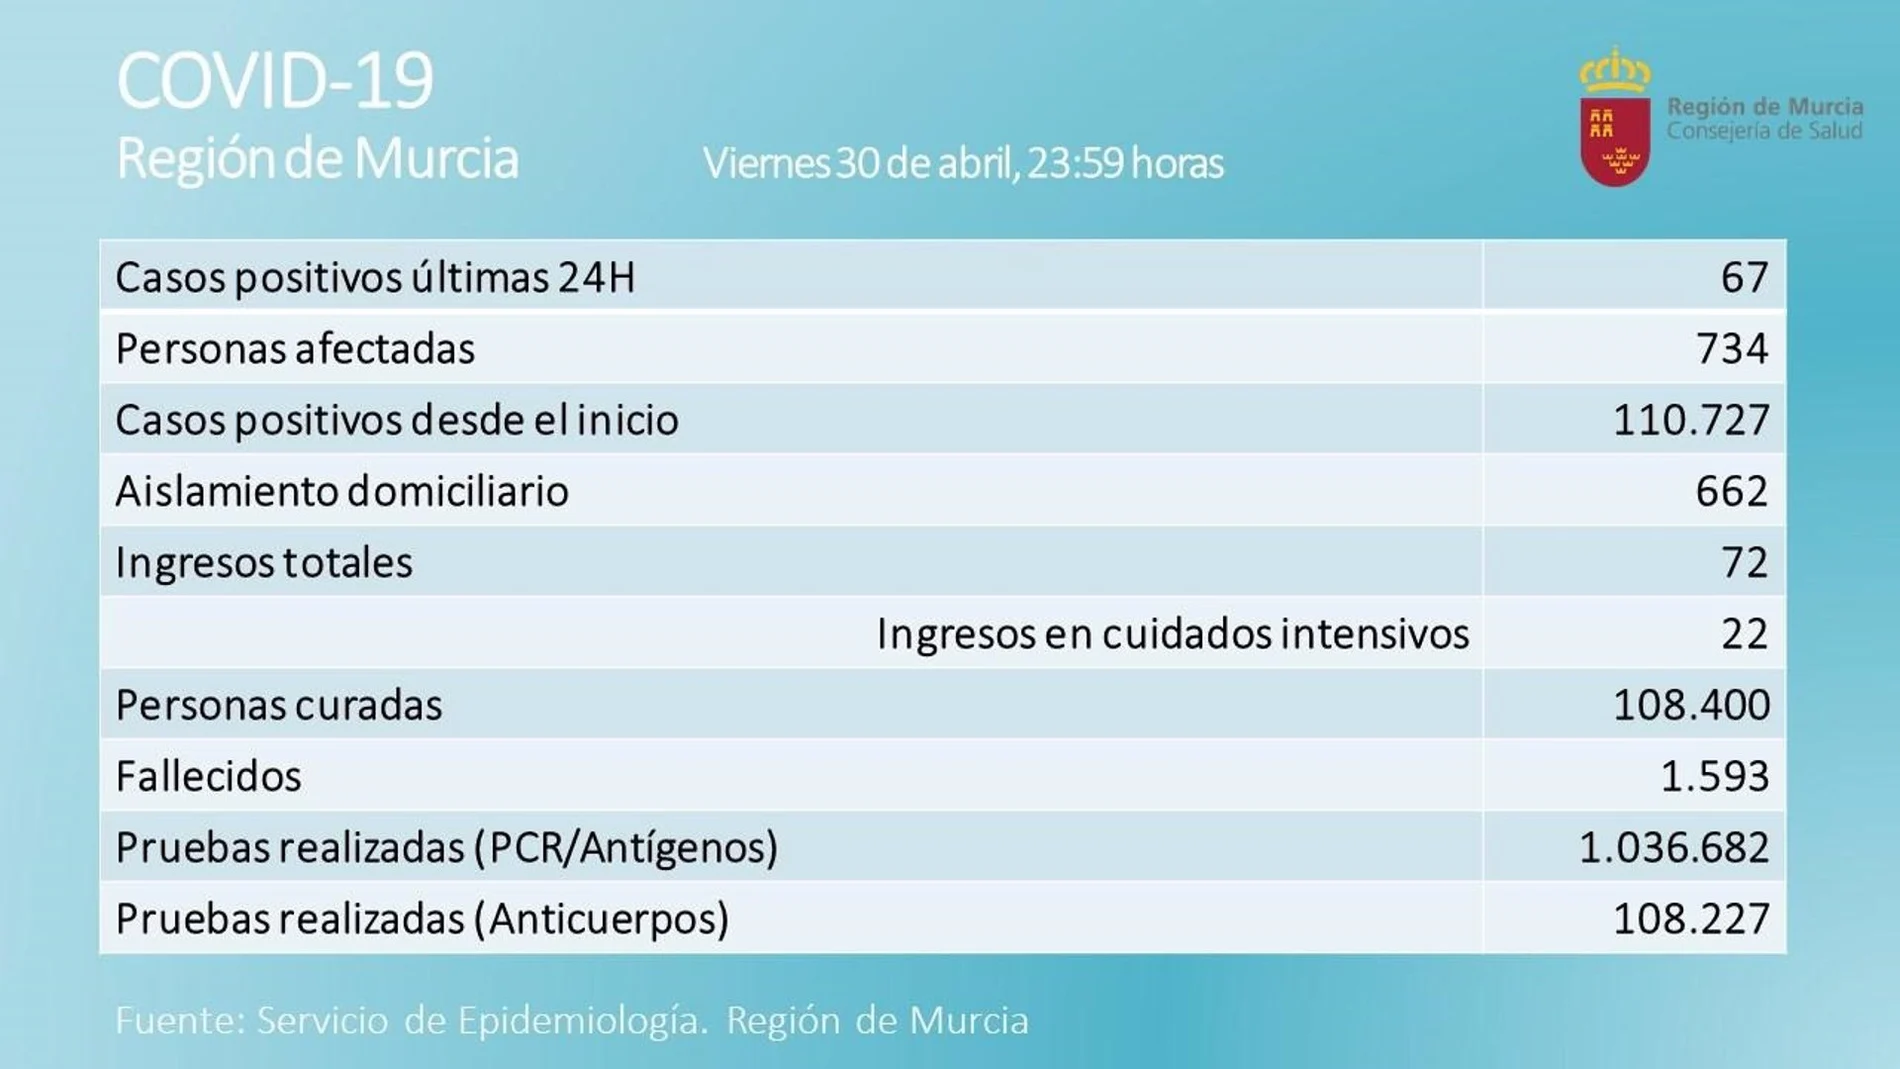 Cuadro sobre la incidencia del coronavirus durante la última jornada.La Región de Murcia ha registrado 67 nuevos casos positivos por Covid-19